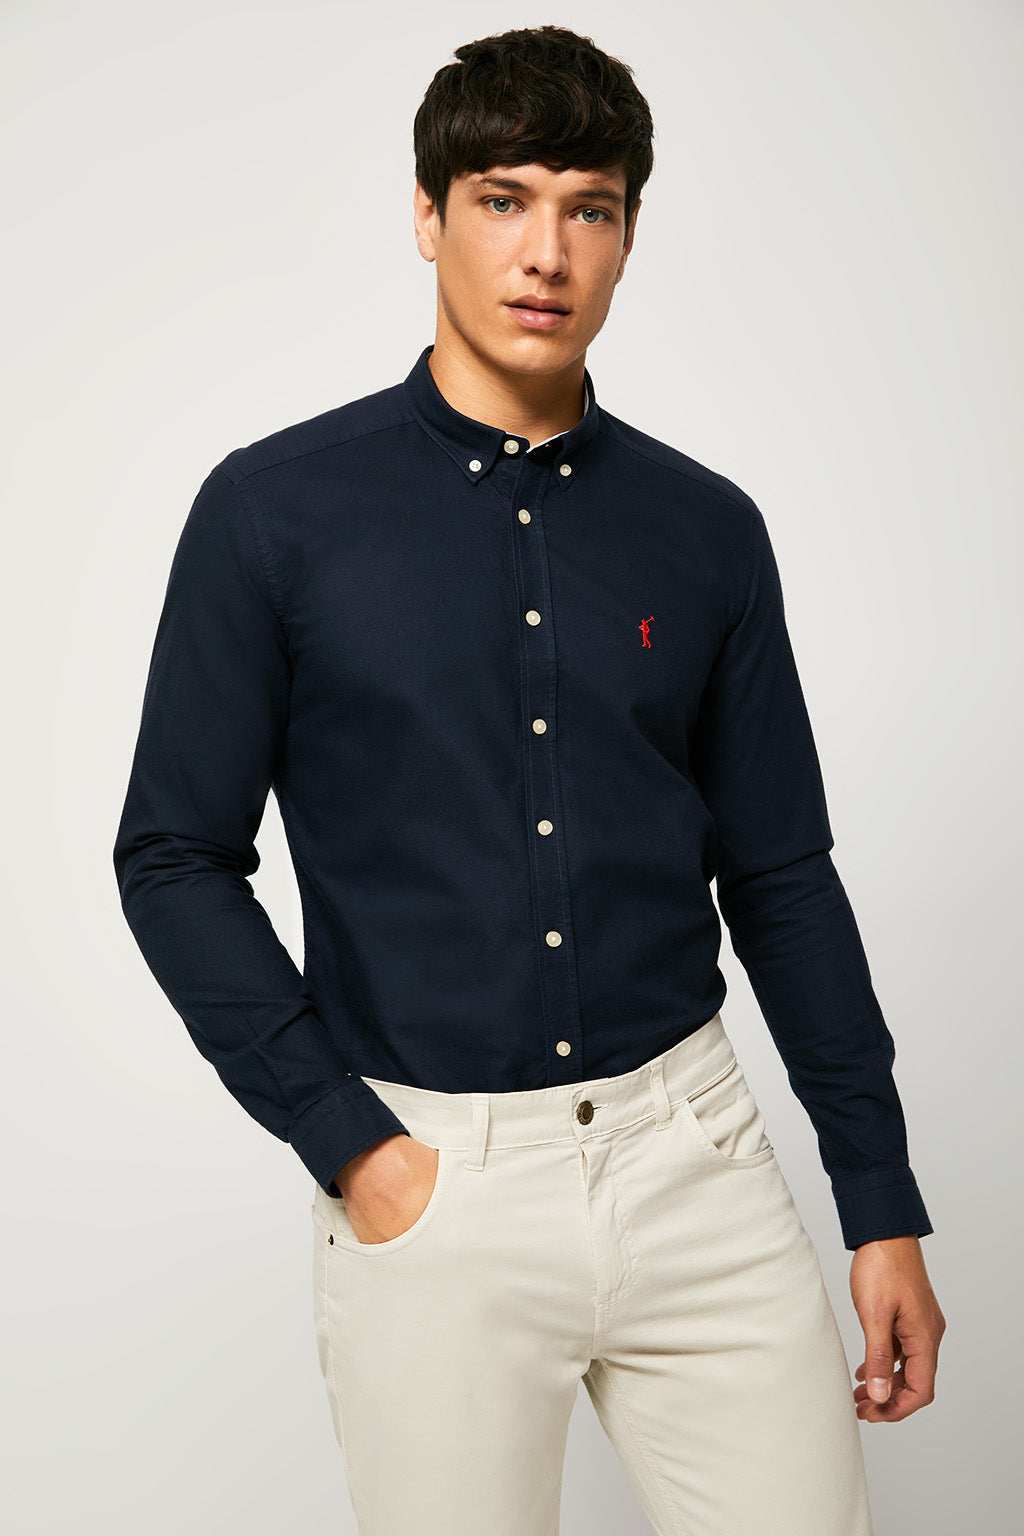 Camisa oxford azul marino con logo bordado – Polo Club